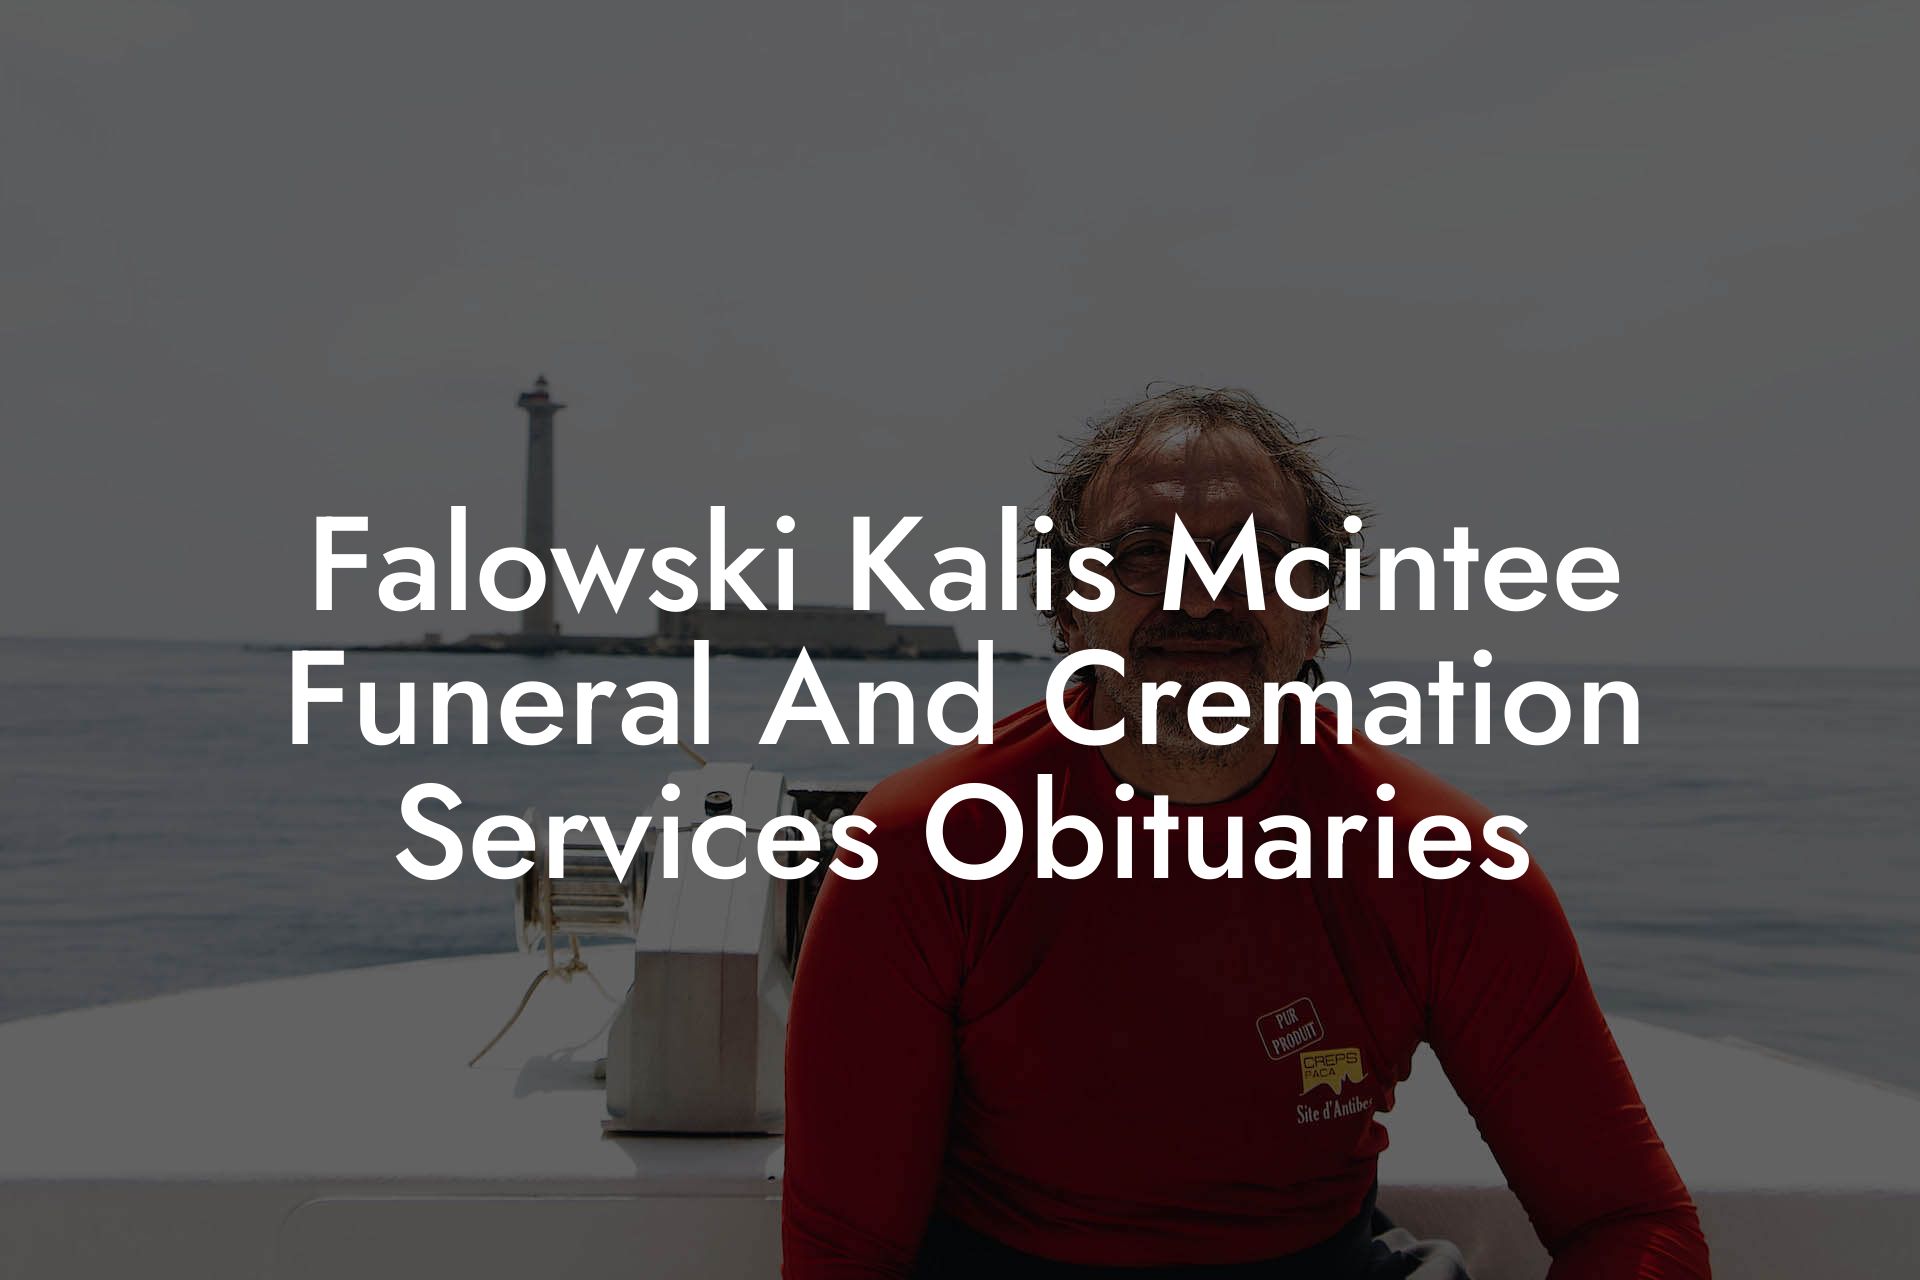 Falowski Kalis Mcintee Funeral And Cremation Services Obituaries